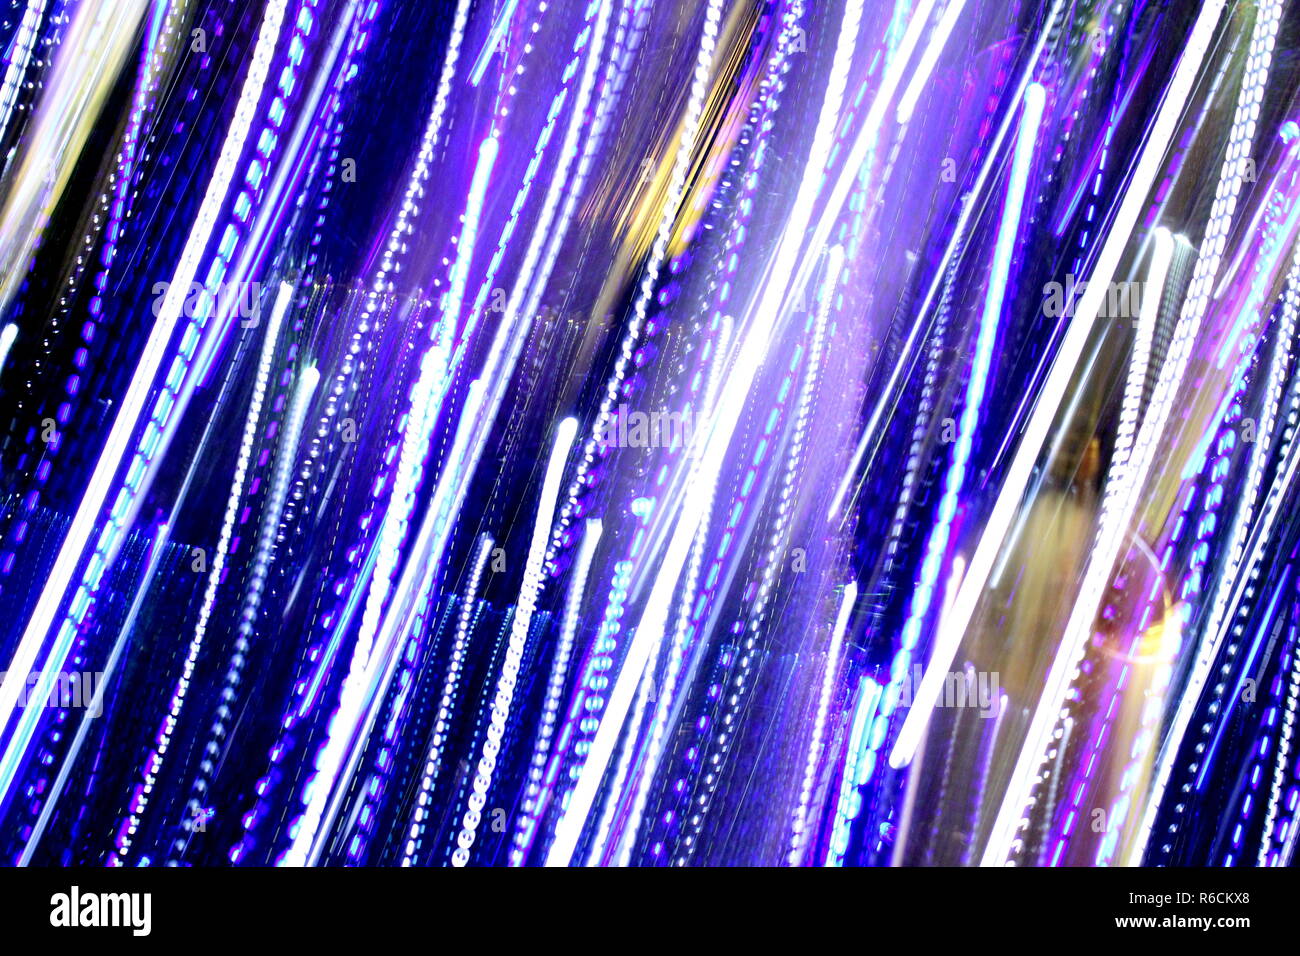 Abstrakte unscharfen Hintergrund, bunte Lichter, Geschwindigkeit und  Bewegung mit mehreren Farben farbige Lichter, Gemischt blau, lila, gold und  grün verschwommen Lichter Stockfotografie - Alamy